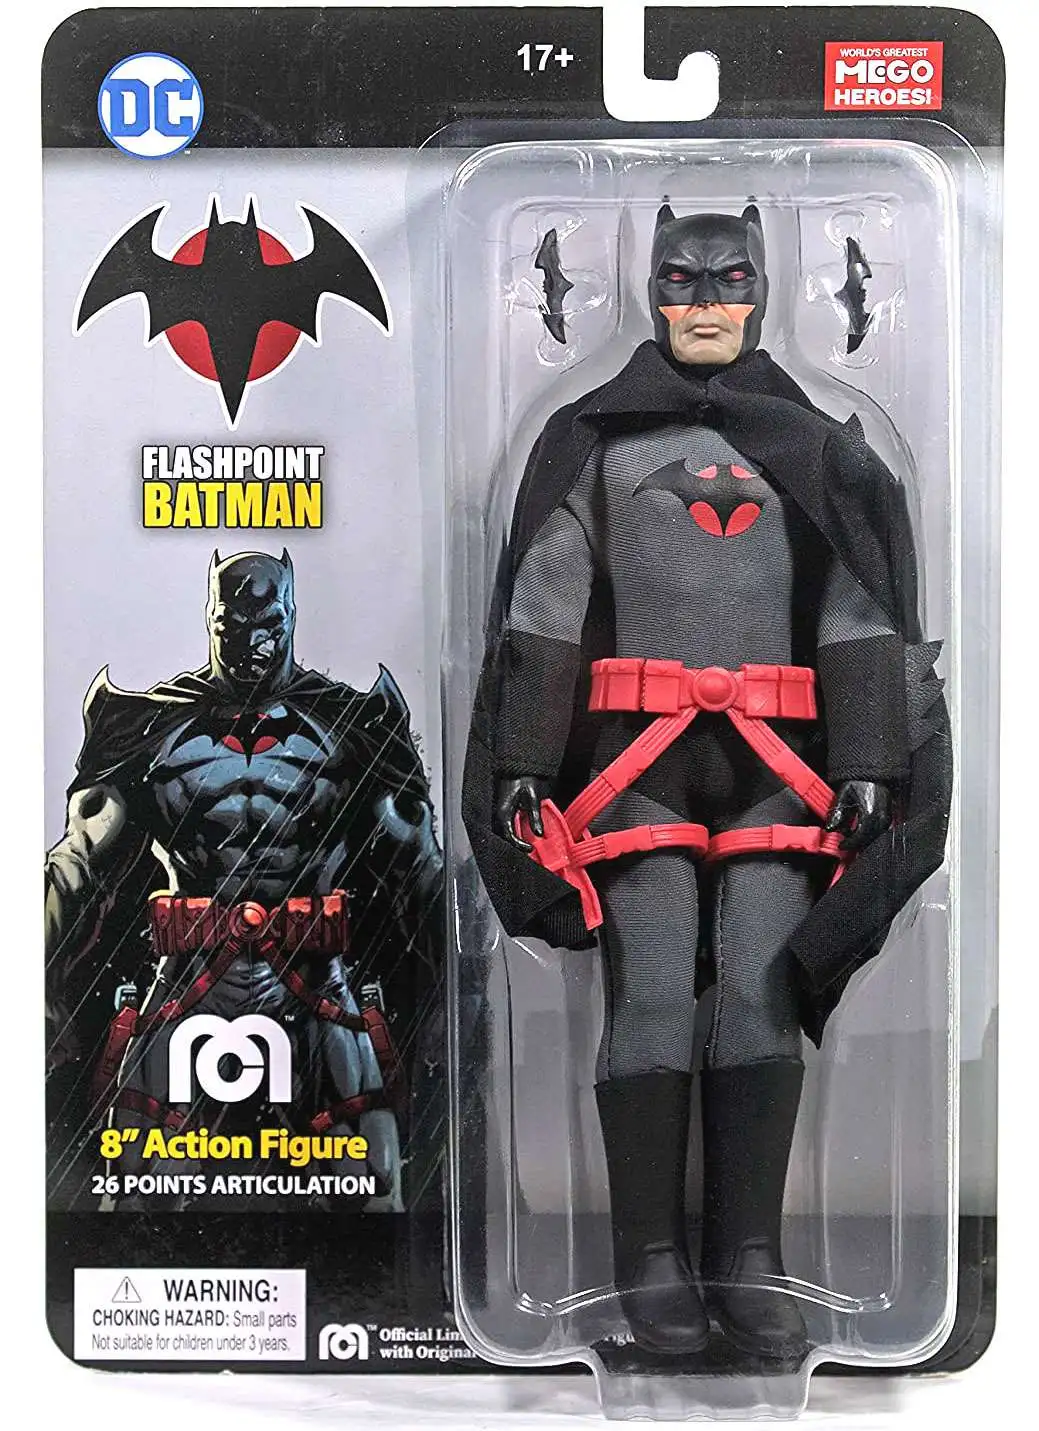 DC Flashpoint Batman Exclusive 8 Action Figure Mego Corp - ToyWiz